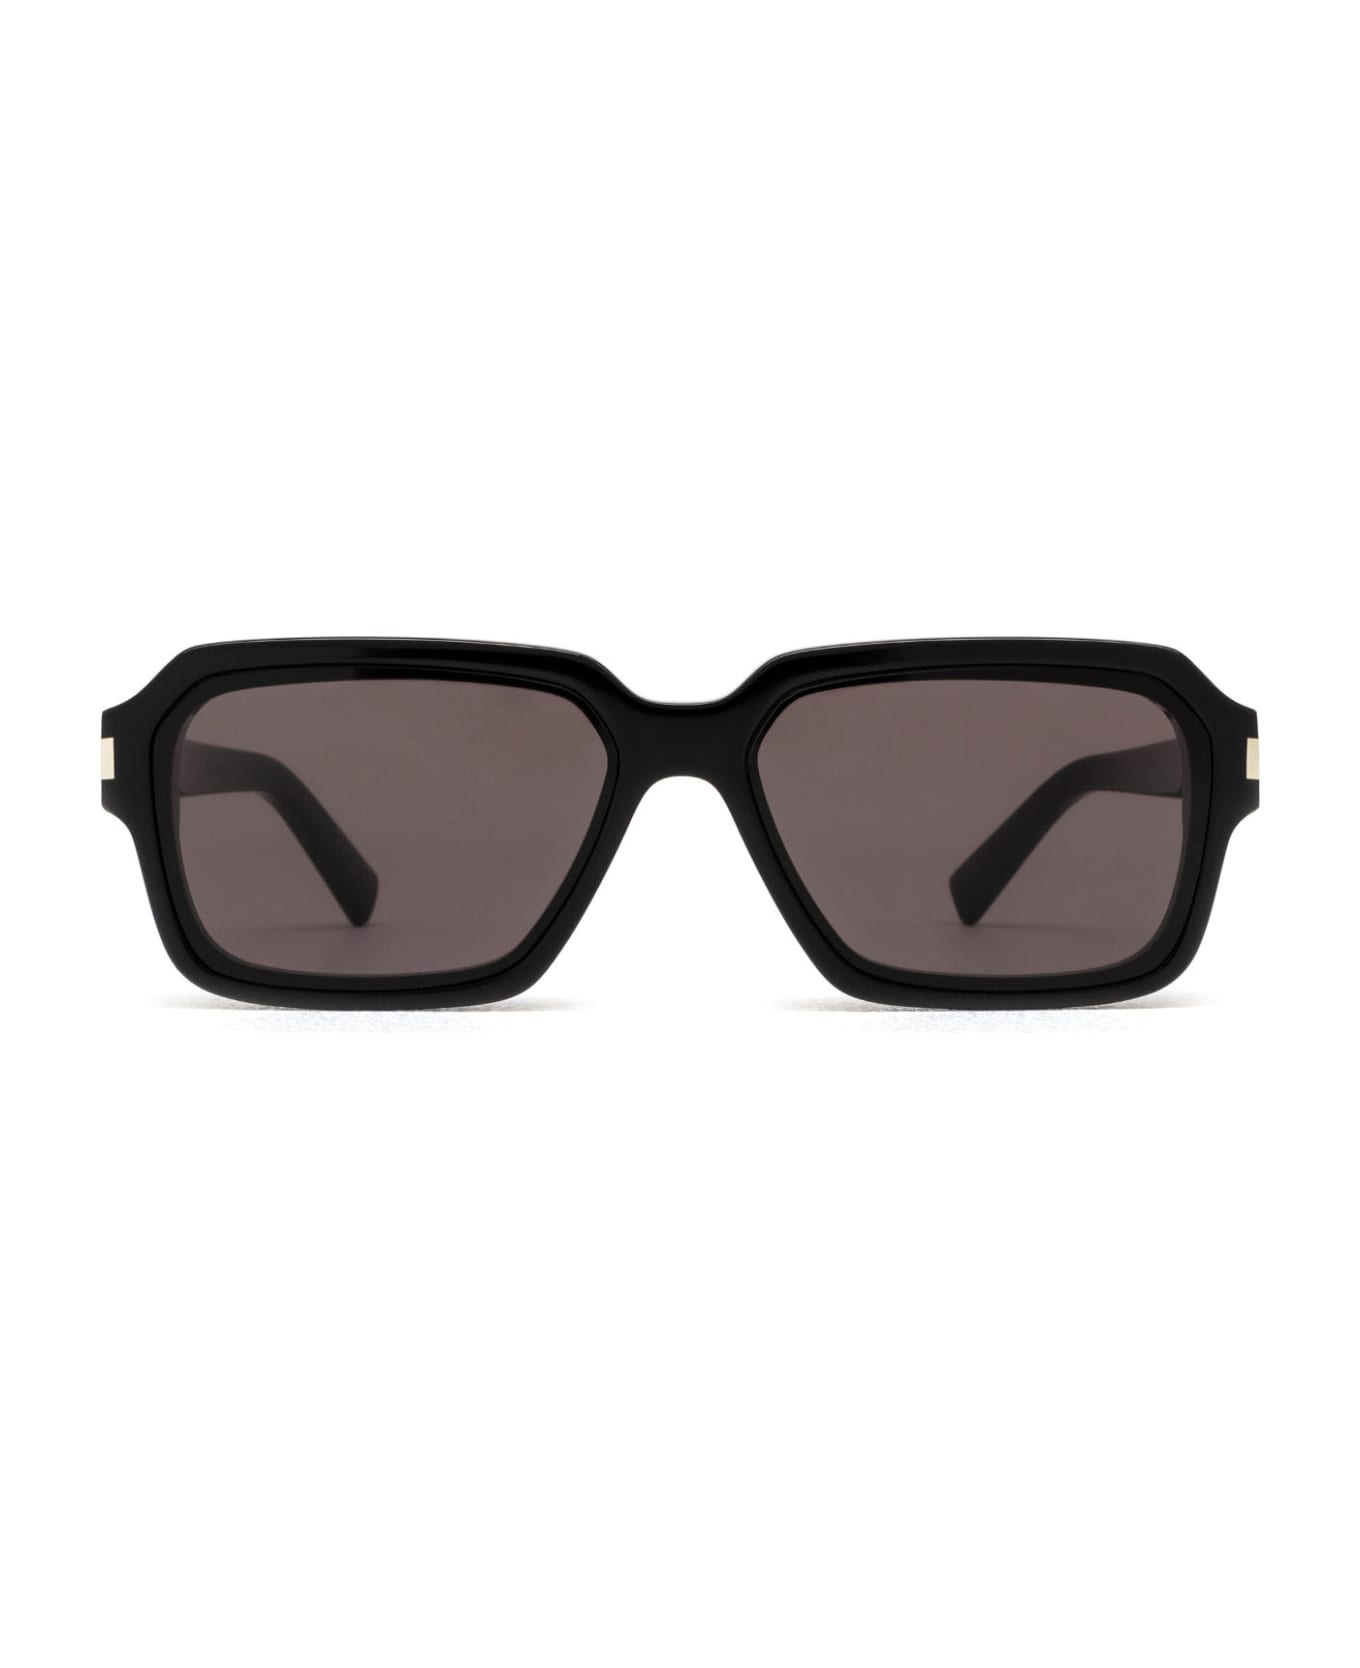 Saint Laurent Eyewear Sl 611 Black Sunglasses - Black サングラス